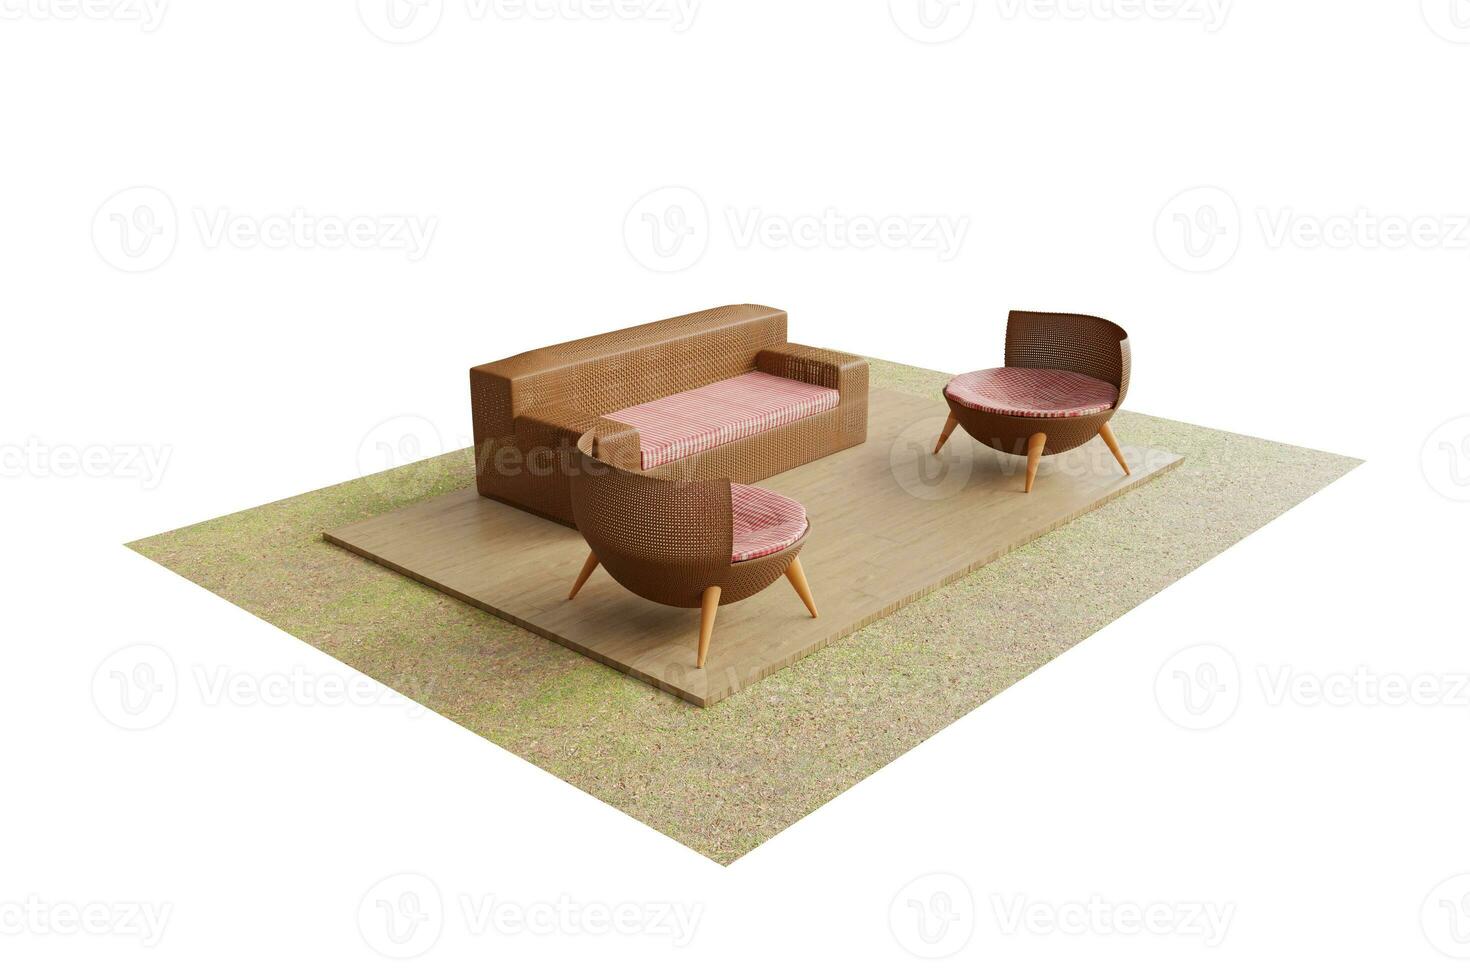 moderno estilo marrón rota mueble colocar, rota sillas para sentado en el jardín. césped o balcón elegante diseño sofá en al aire libre o interior de madera piso. representación 3d ilustraciones - recorte camino foto